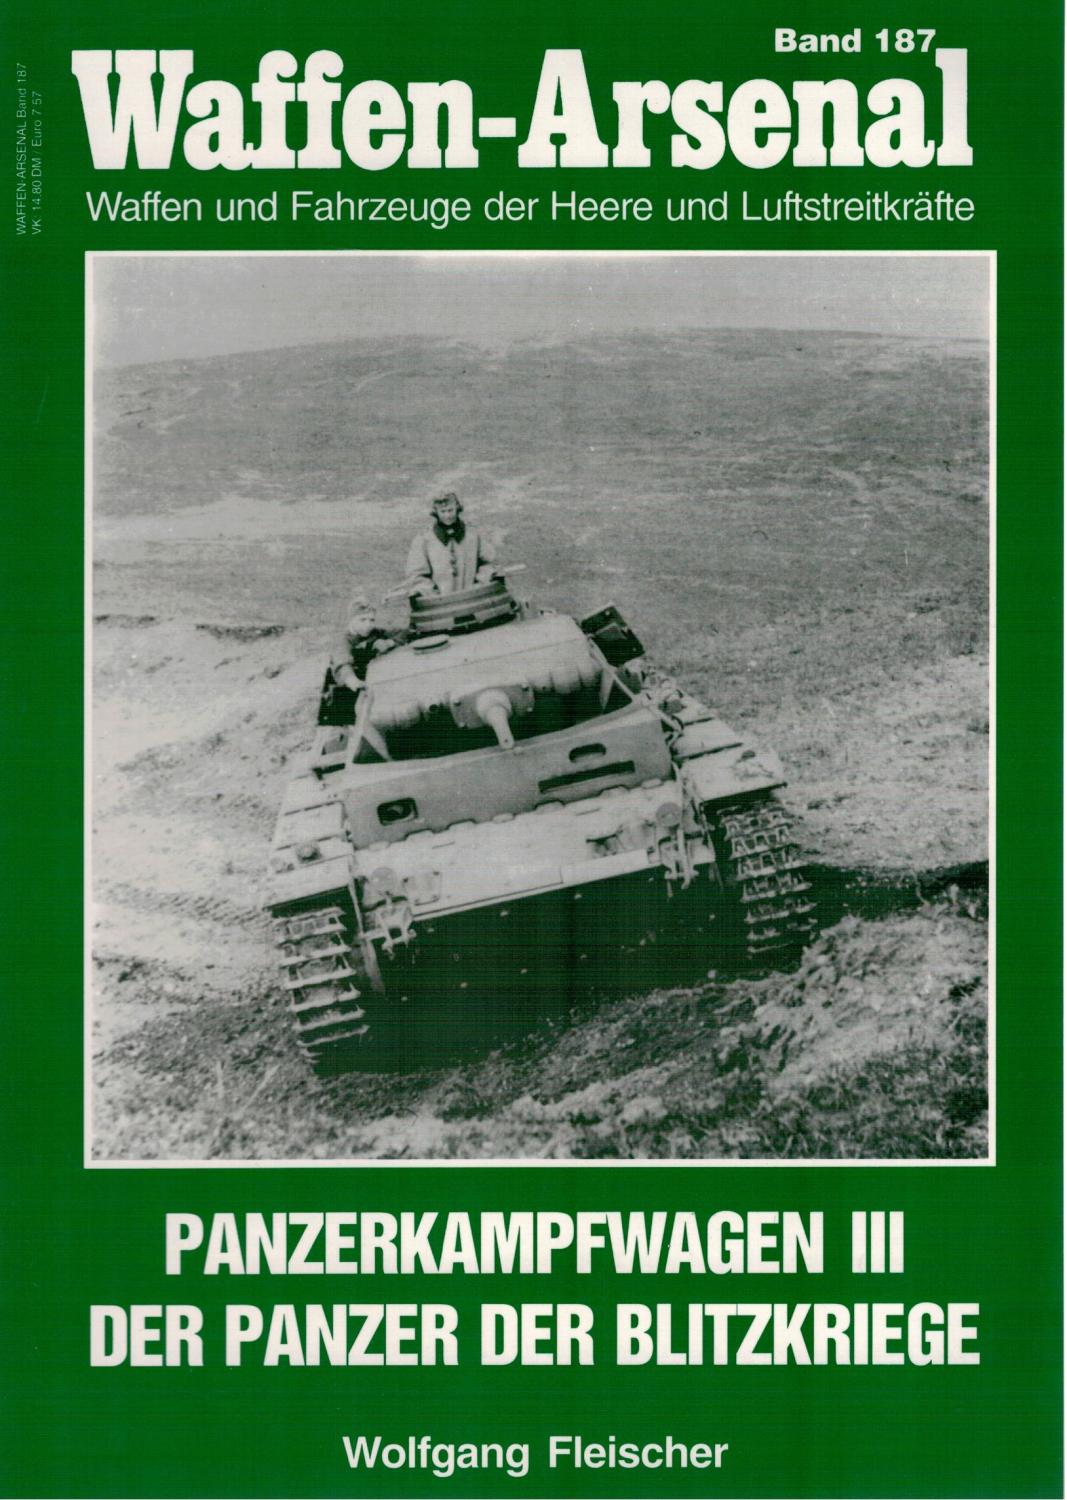 Waffen-Arsenal 187: Panzerkampfwagen III. Der Panzer der Blitzkriege